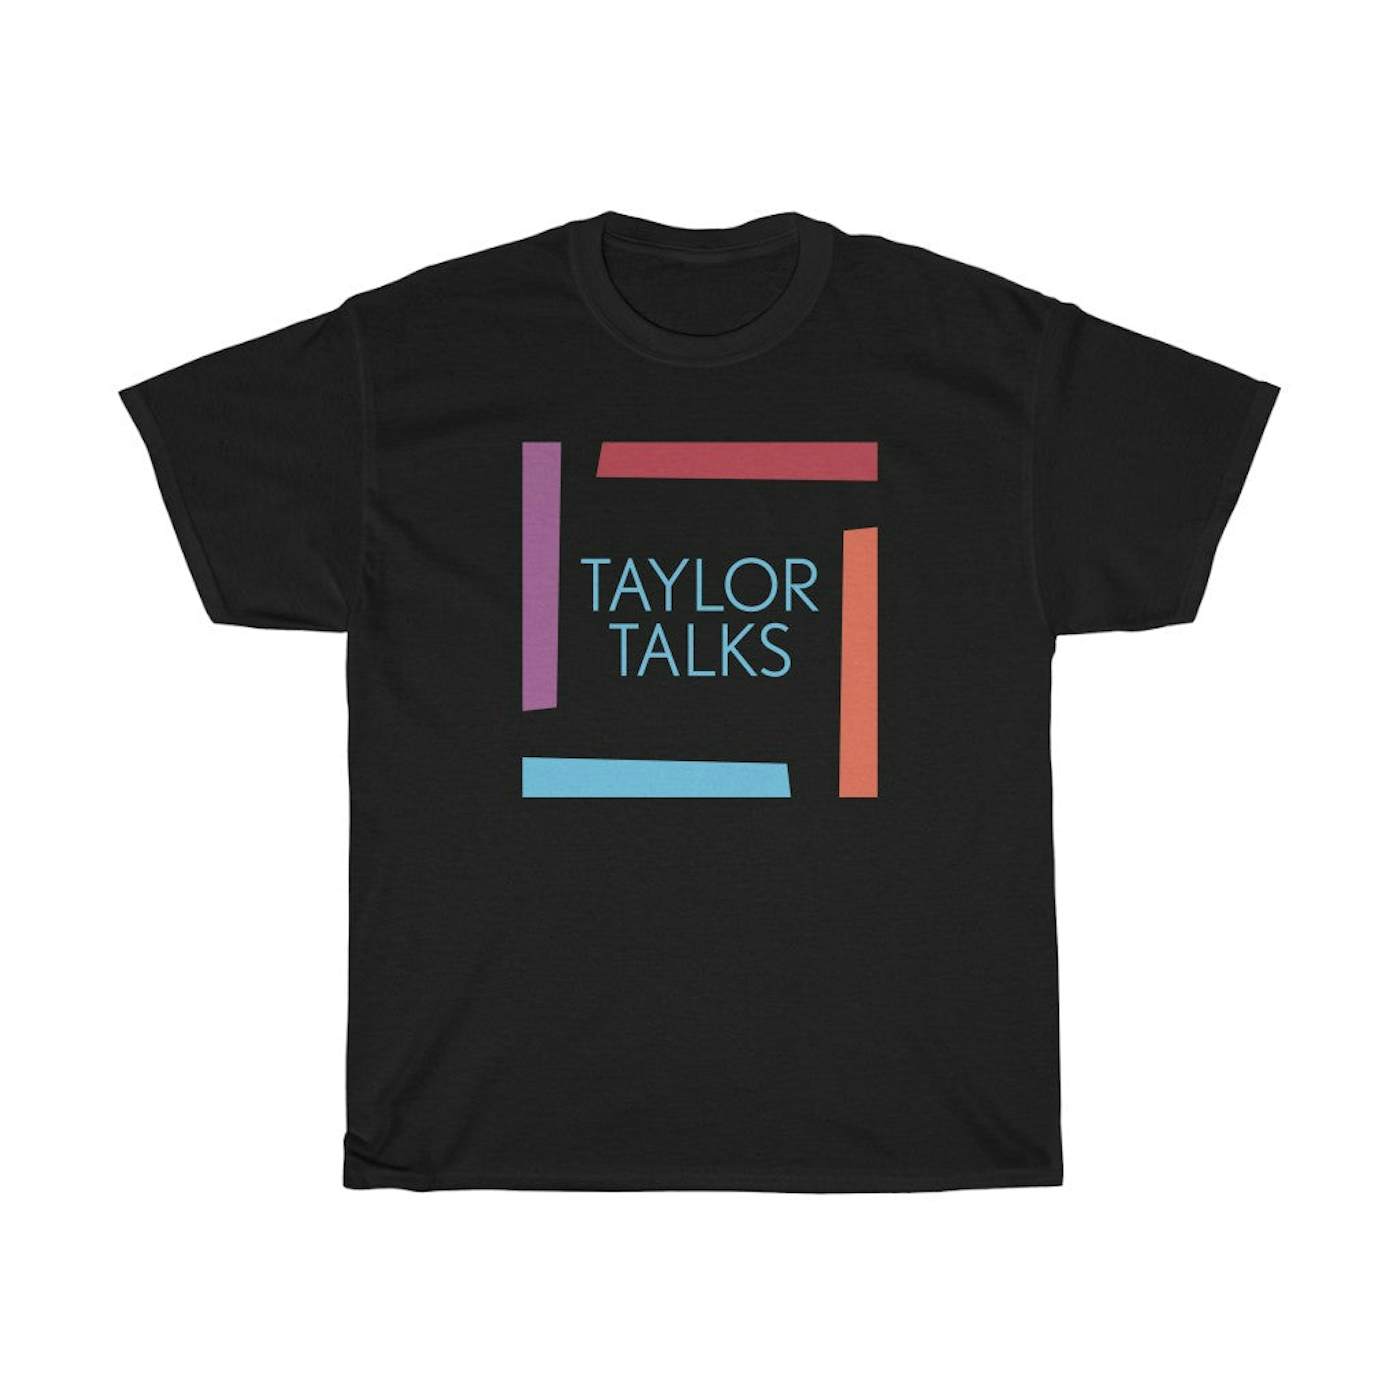 Fantasia - Taylor Talks Square Shirt